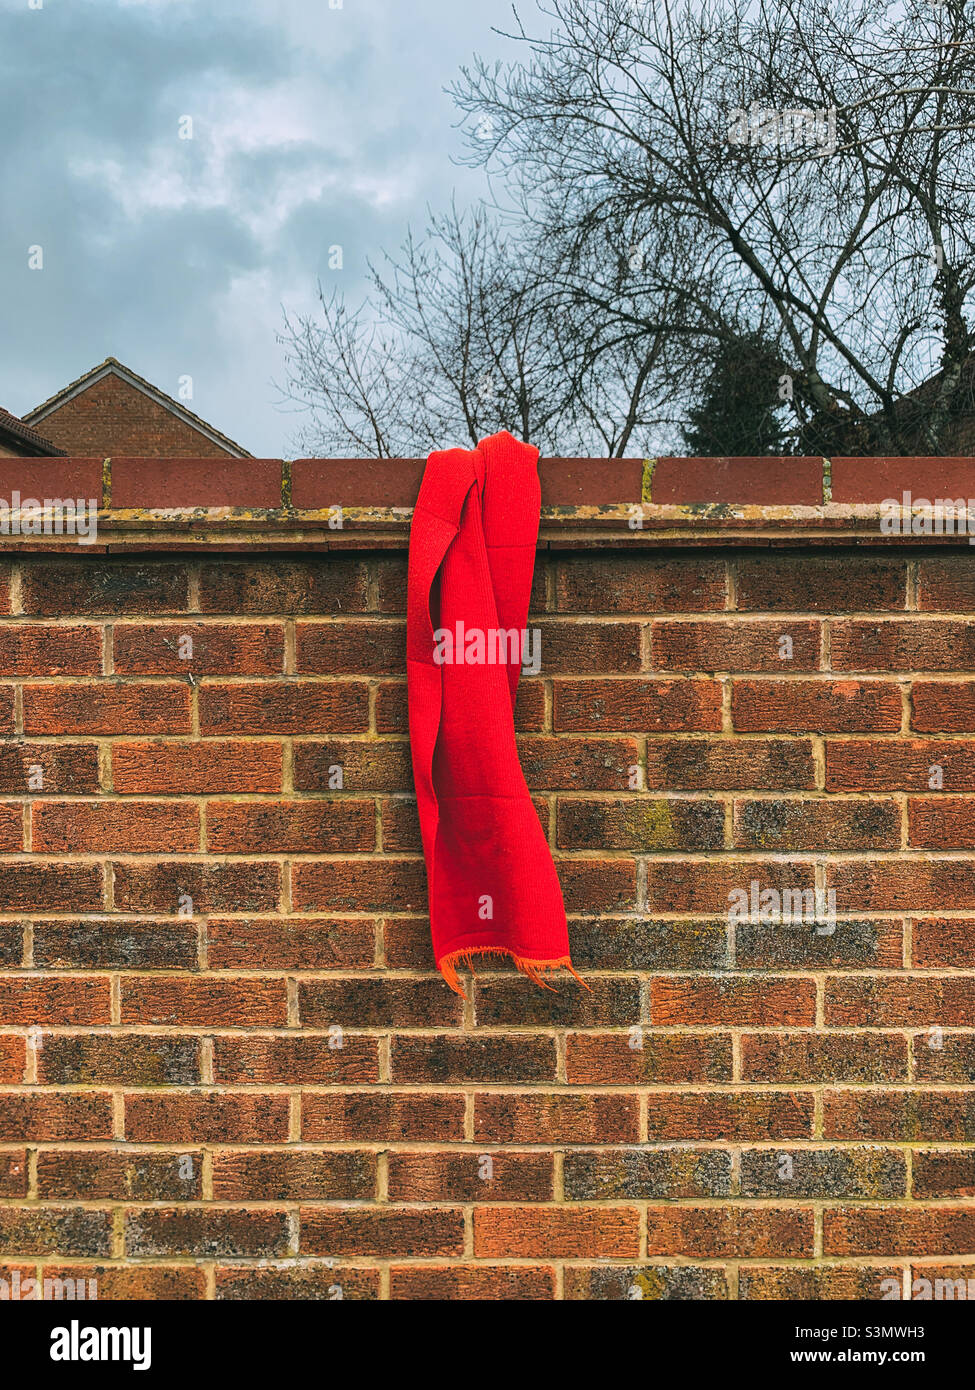 Foulard rouge perdu sur un mur de briques Photo Stock - Alamy